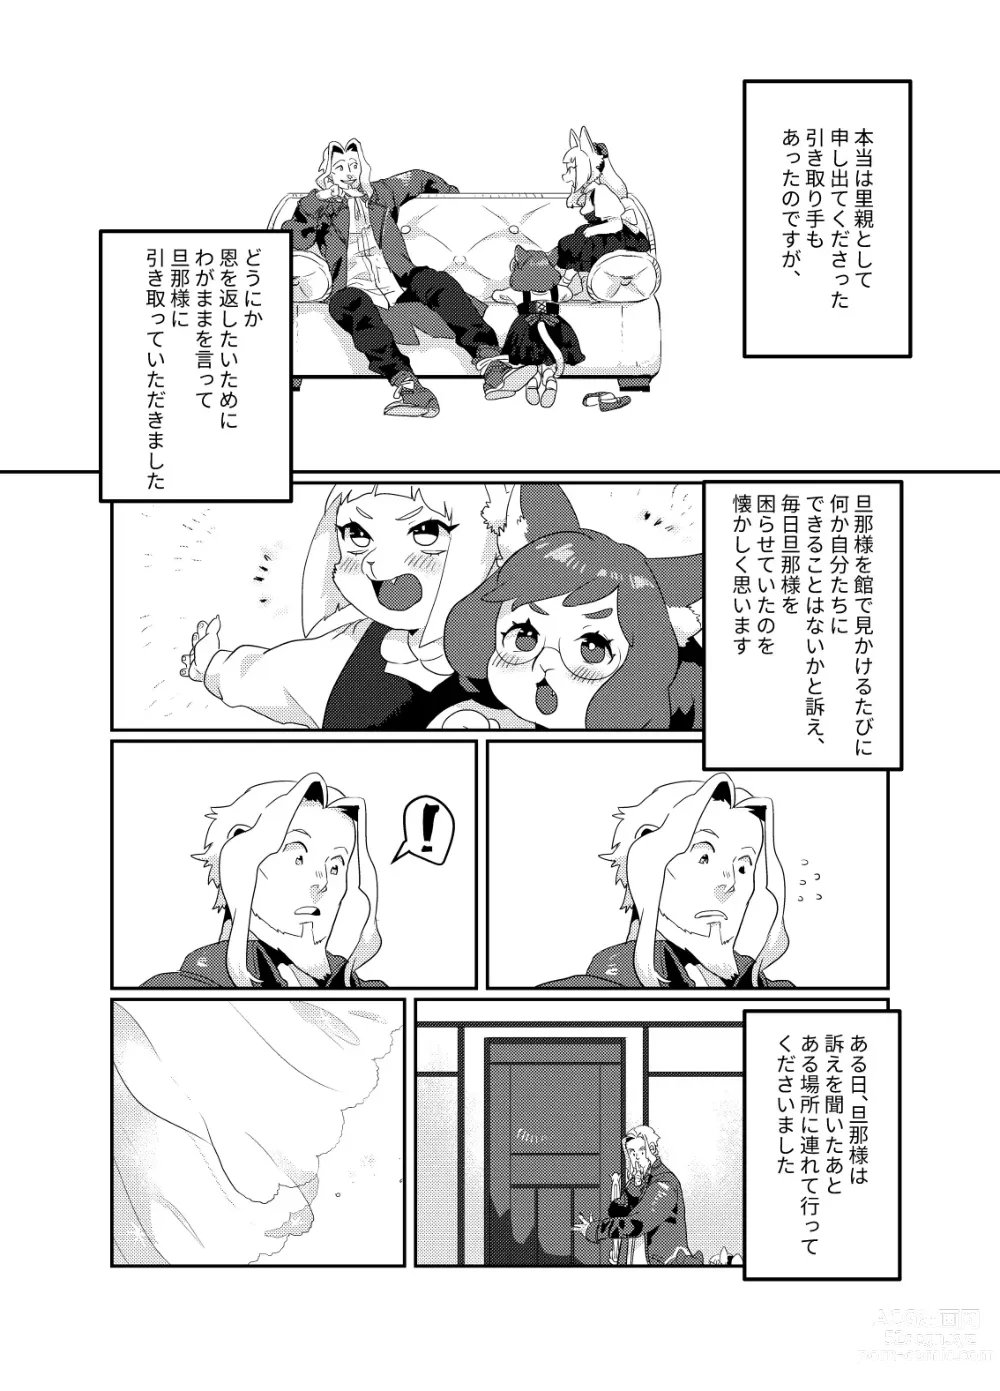 Page 12 of doujinshi Meido inHEAVEN